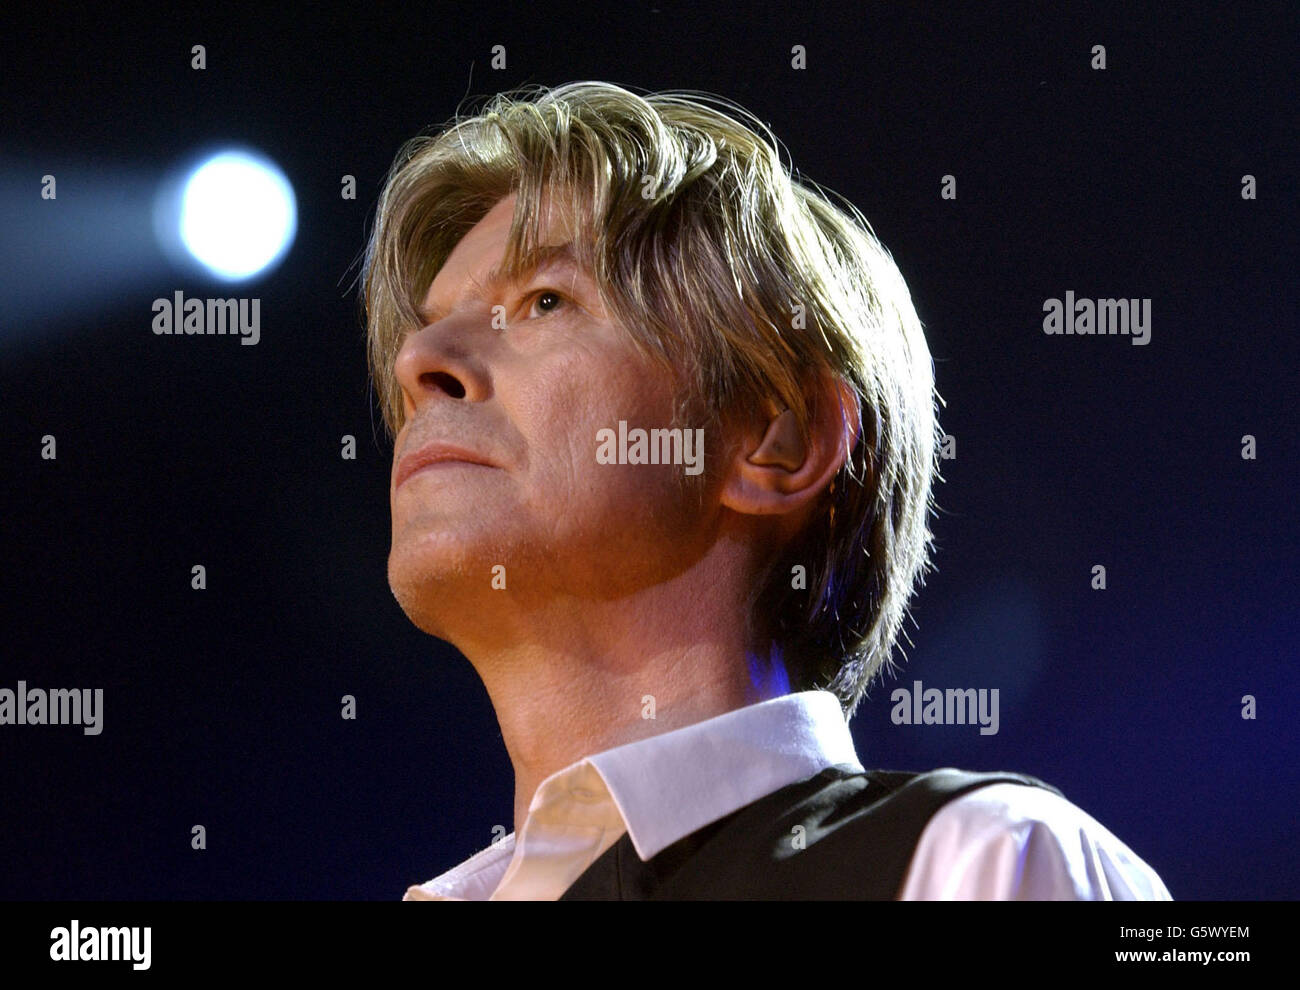 David Bowie esegue materiale dal suo album appena pubblicato Heathen, durante Meltdown 2002, il finale di un evento di due settimane, al Royal Festival Hall di Londra. Foto Stock